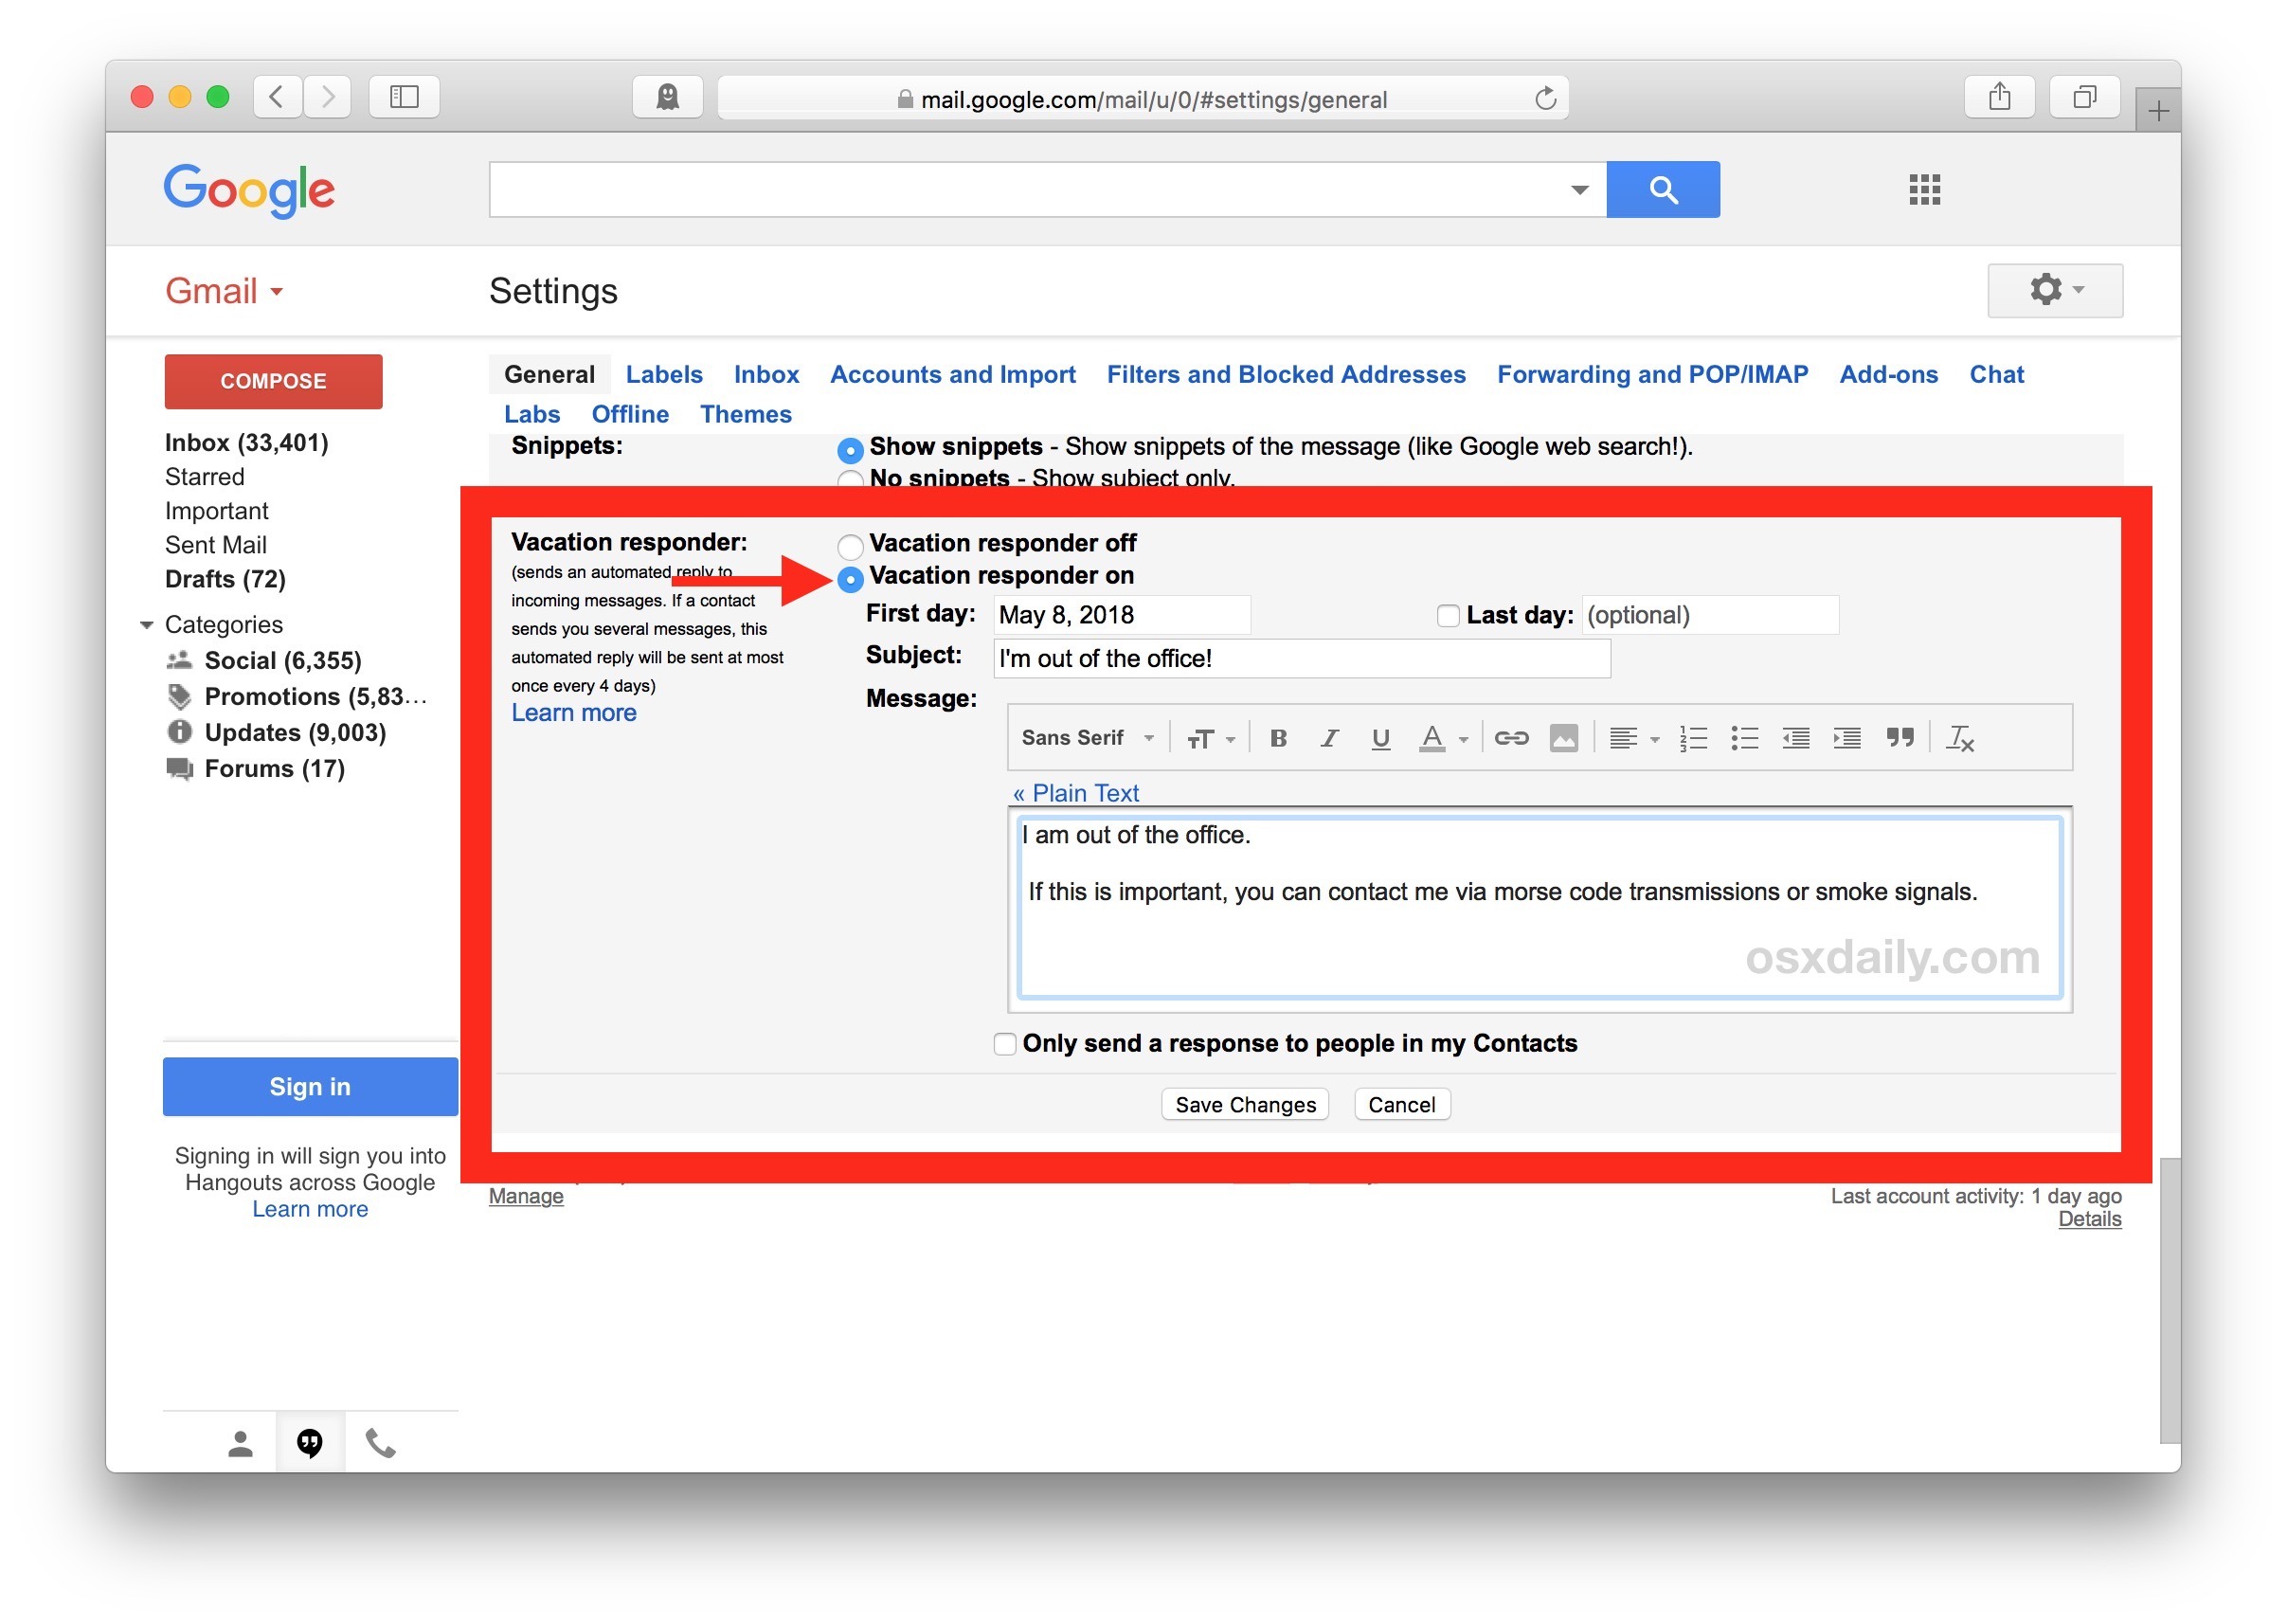 Come impostare un risponditore automatico automatico per rispondere alle e-mail di risposta in Gmail